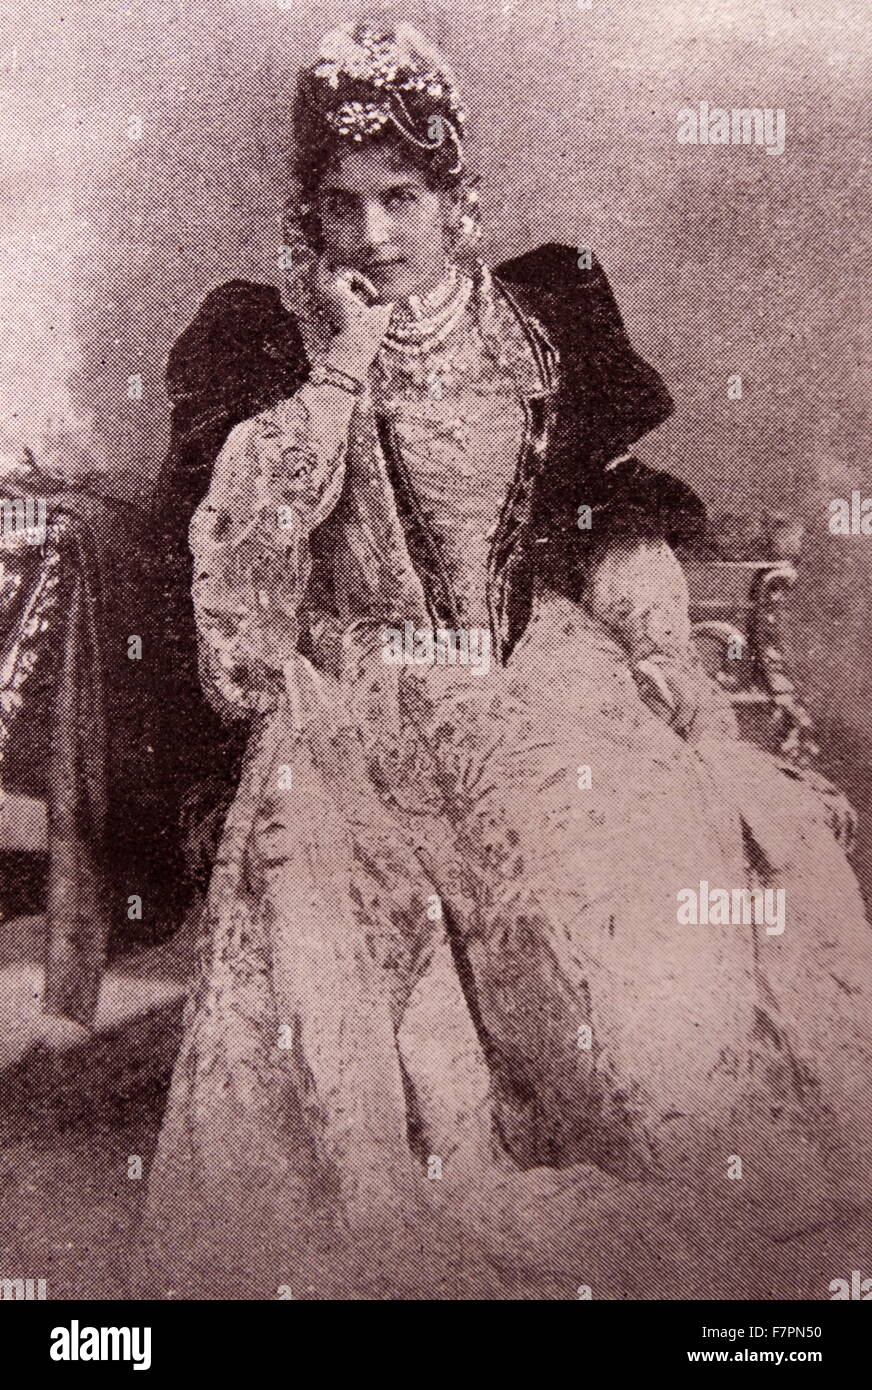 Eine Gräfin in traditioneller Kleidung angebracht, eine Dame von ihrem Rang. Stockfoto